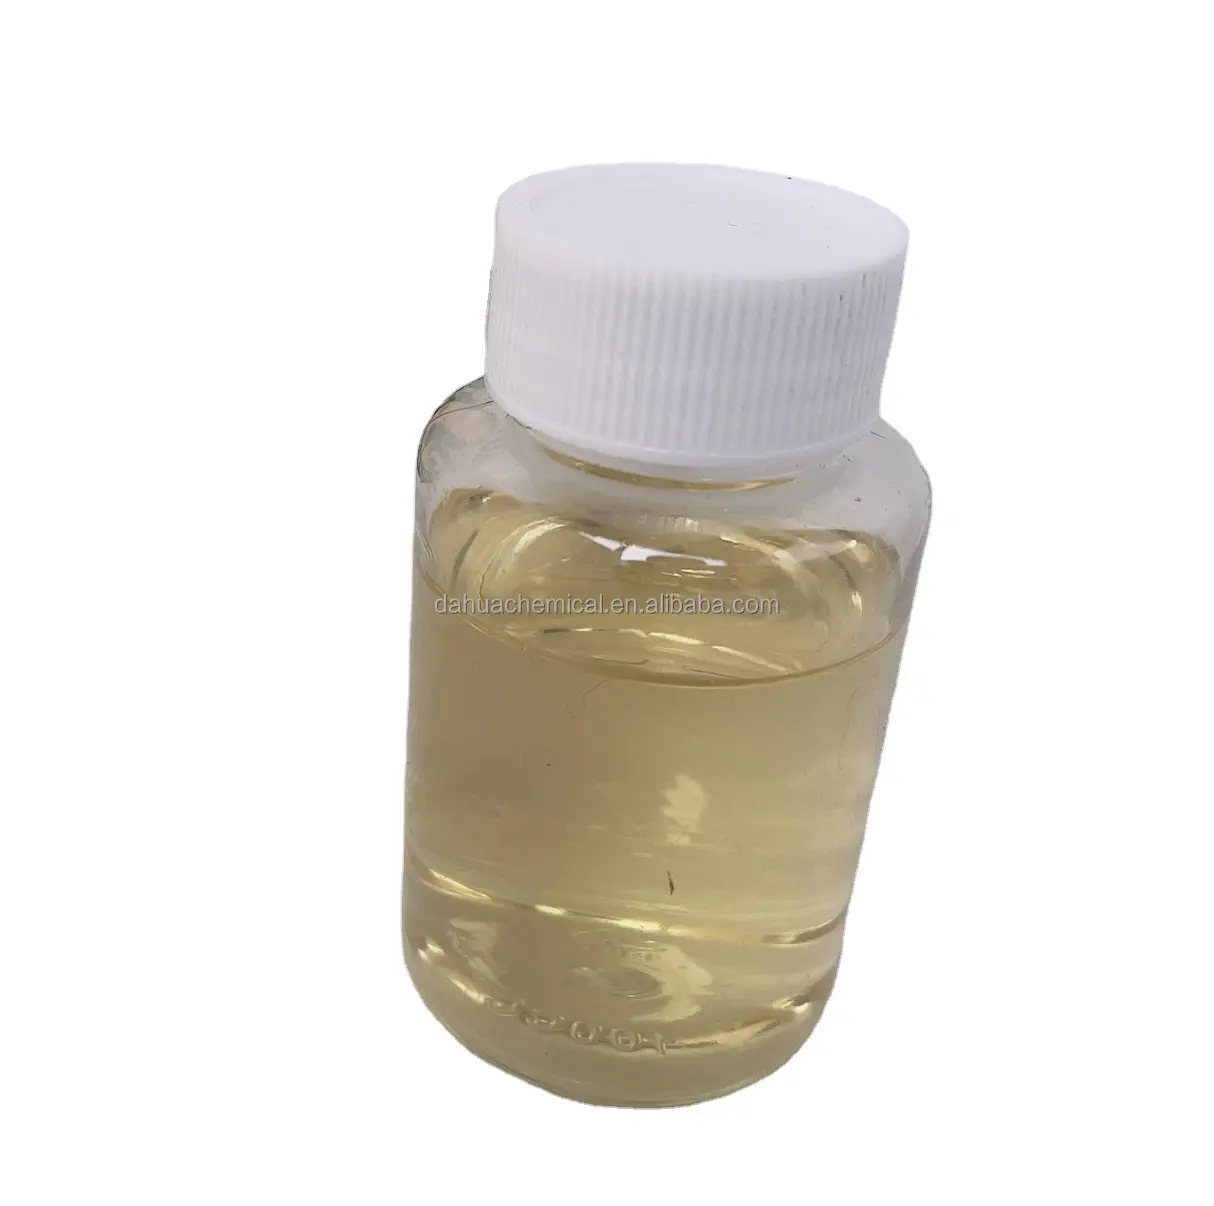 Agen minyak antistatik cair kation untuk poliester nilon poliester dan serat sintetis lainnya untuk menghilangkan emulsi statis melalui